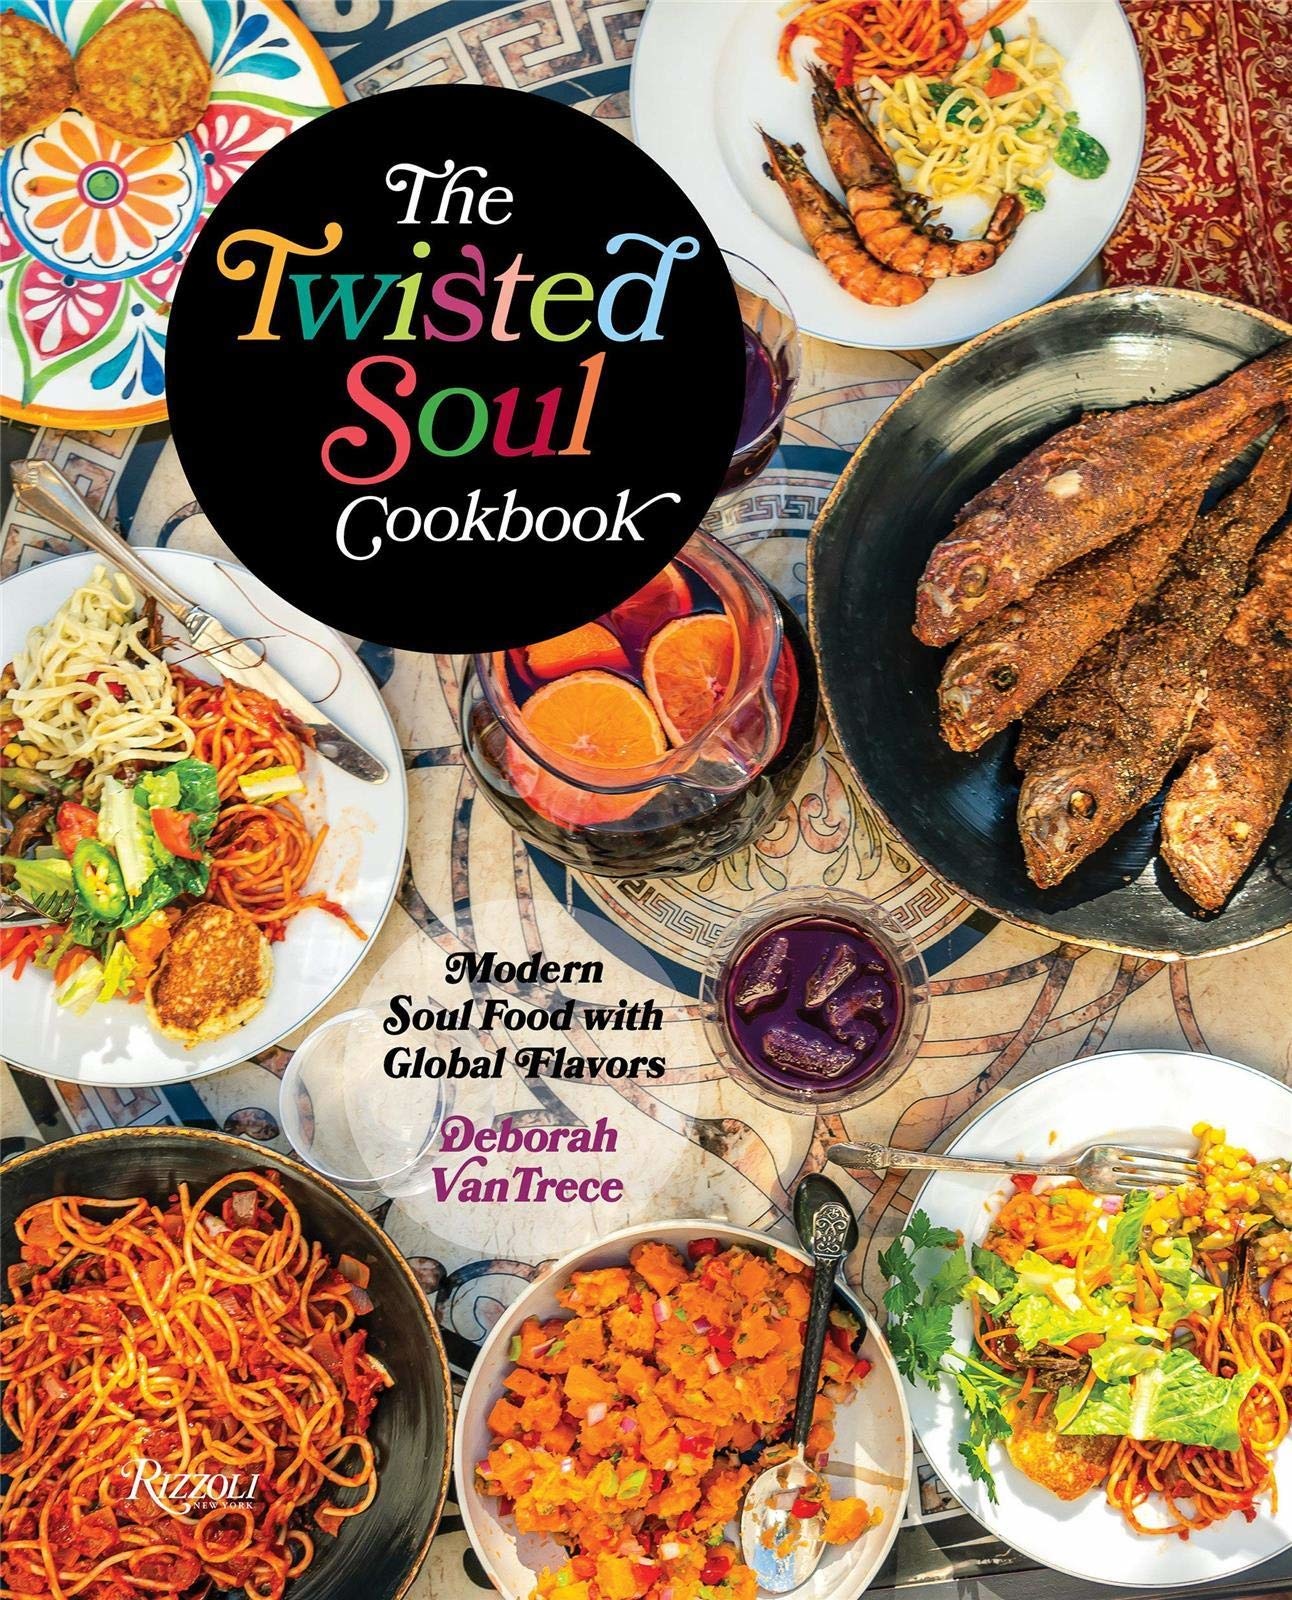 The Twisted Soul Cookbook by Deborah Van Trece